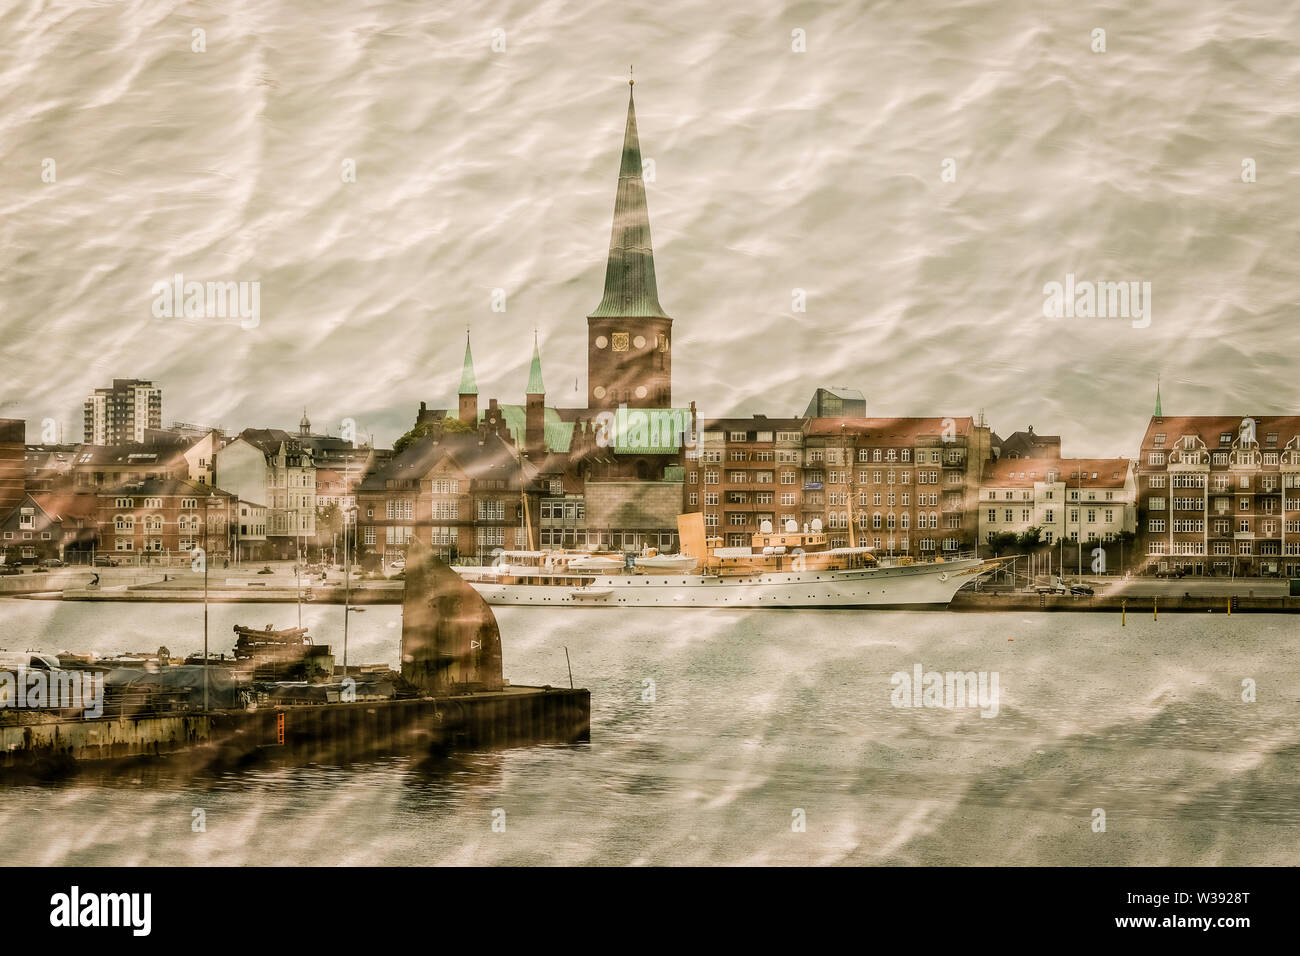 Ciudad de Aarhus, la exposición múltiple Foto de stock